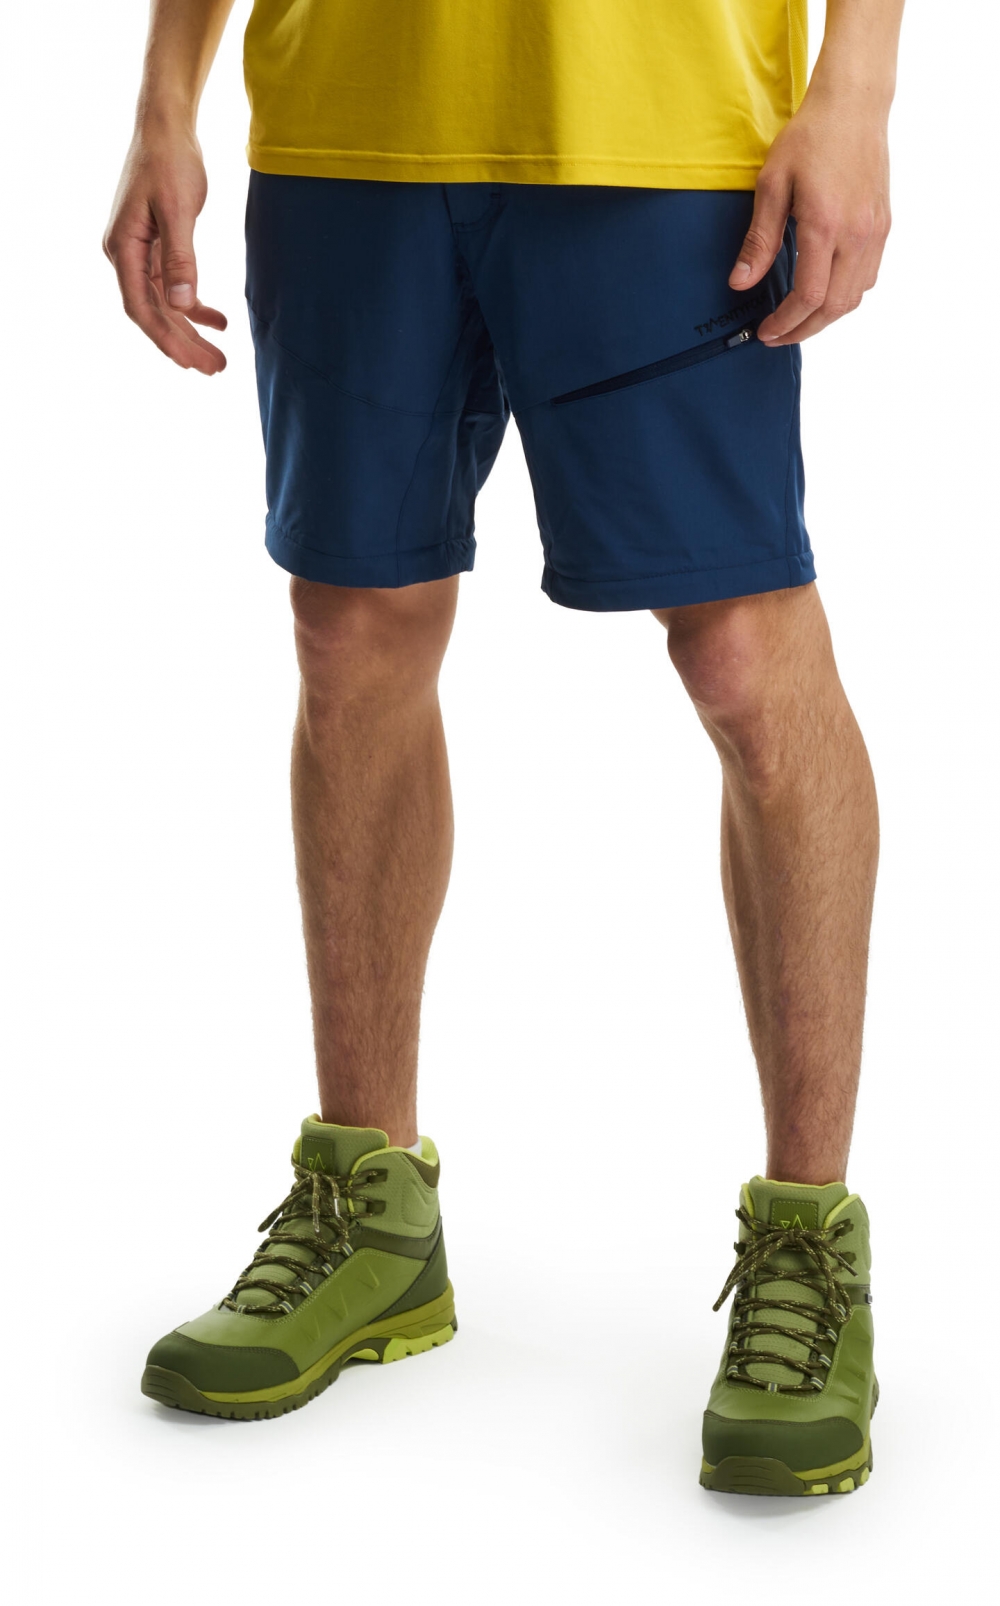 Lett softshell shorts - perfekt til både korte og lange turer. Den har flere praktiske lommer, mulighet for justering i livet og er laget i et materiale som tørker raskt. Denne har optimal passform og passer like godt til både tur og hverdagsliv! 